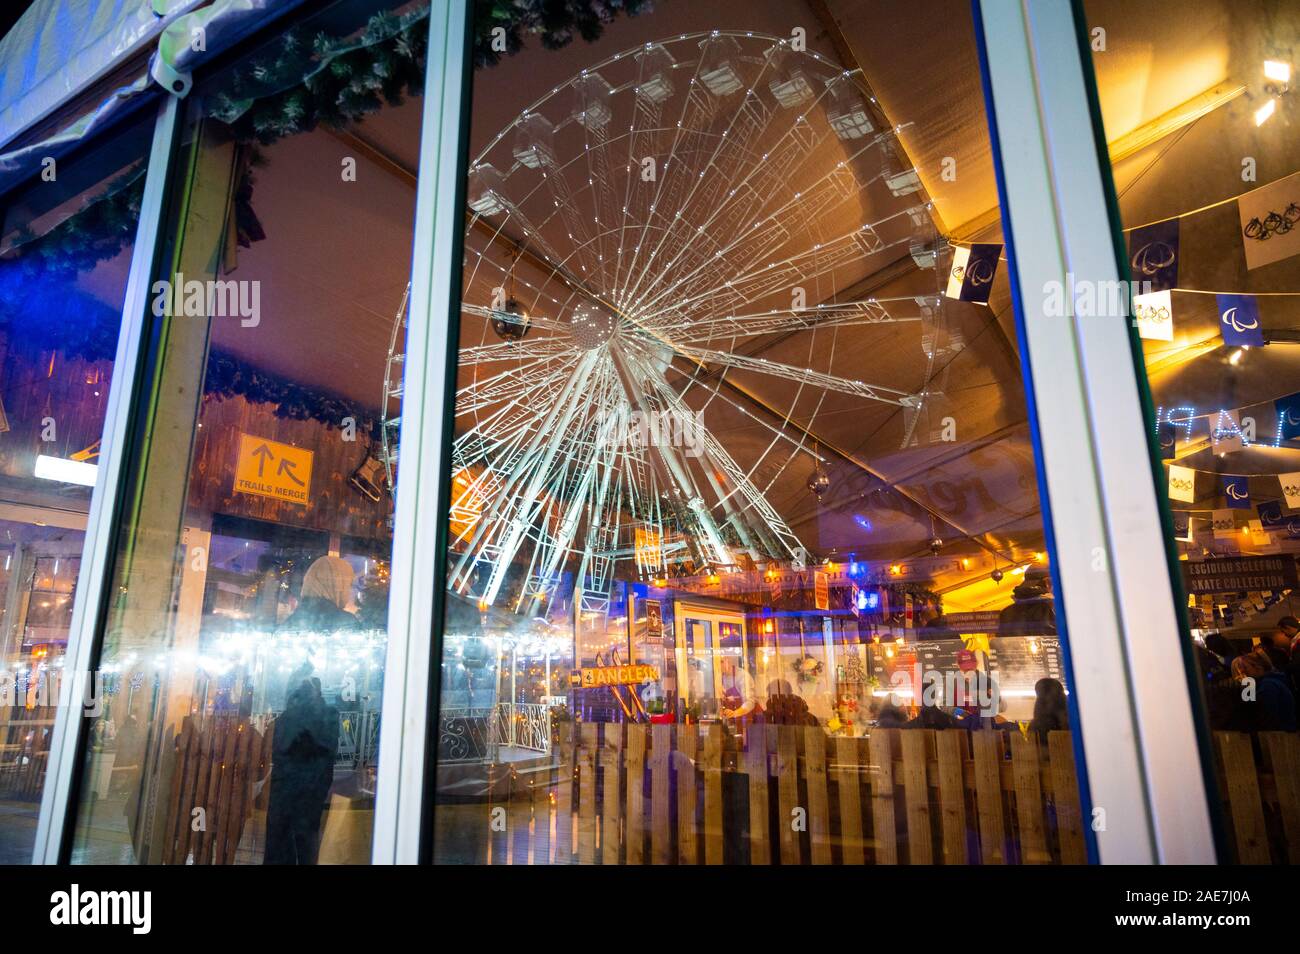 Una fredda notte di dicembre a Cardiff in testa fino a Natale. Riflessi colorati in una finestra al Winter Wonderland. Foto Stock